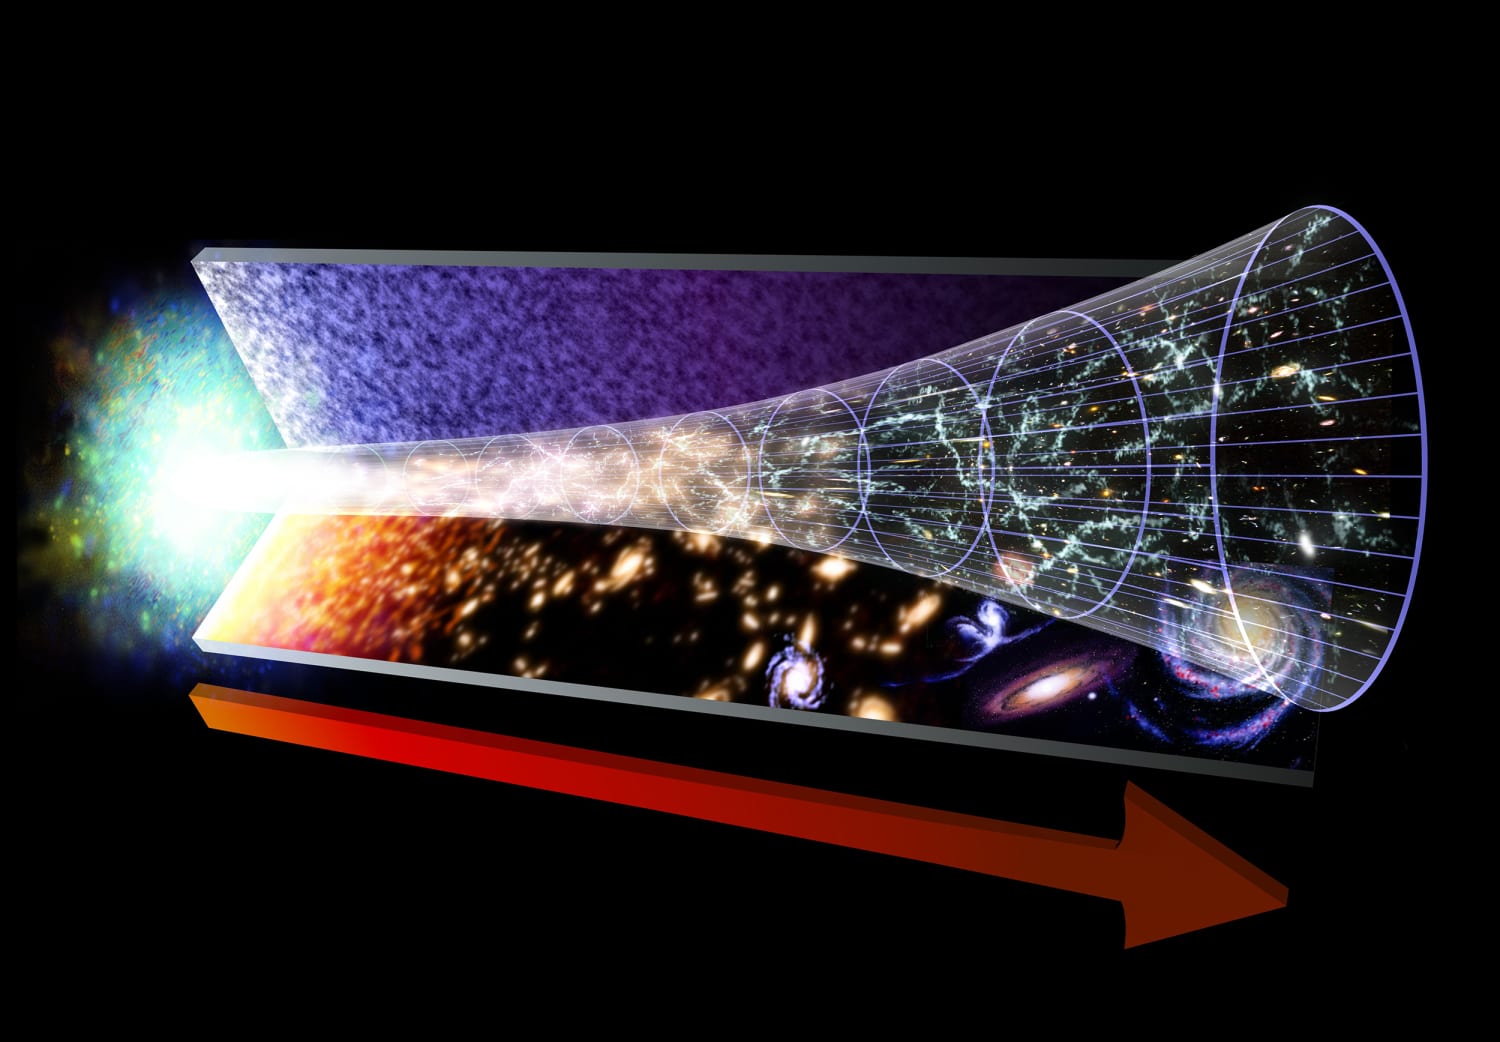 astronomy big bang time